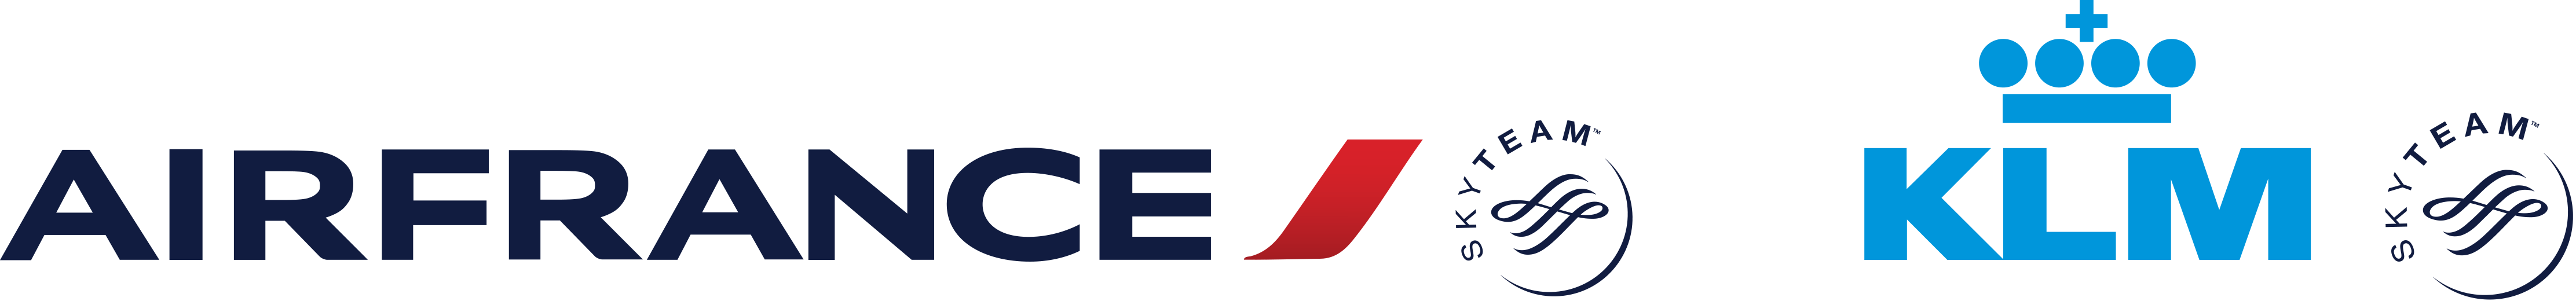 Air France-KLM Logo transpare